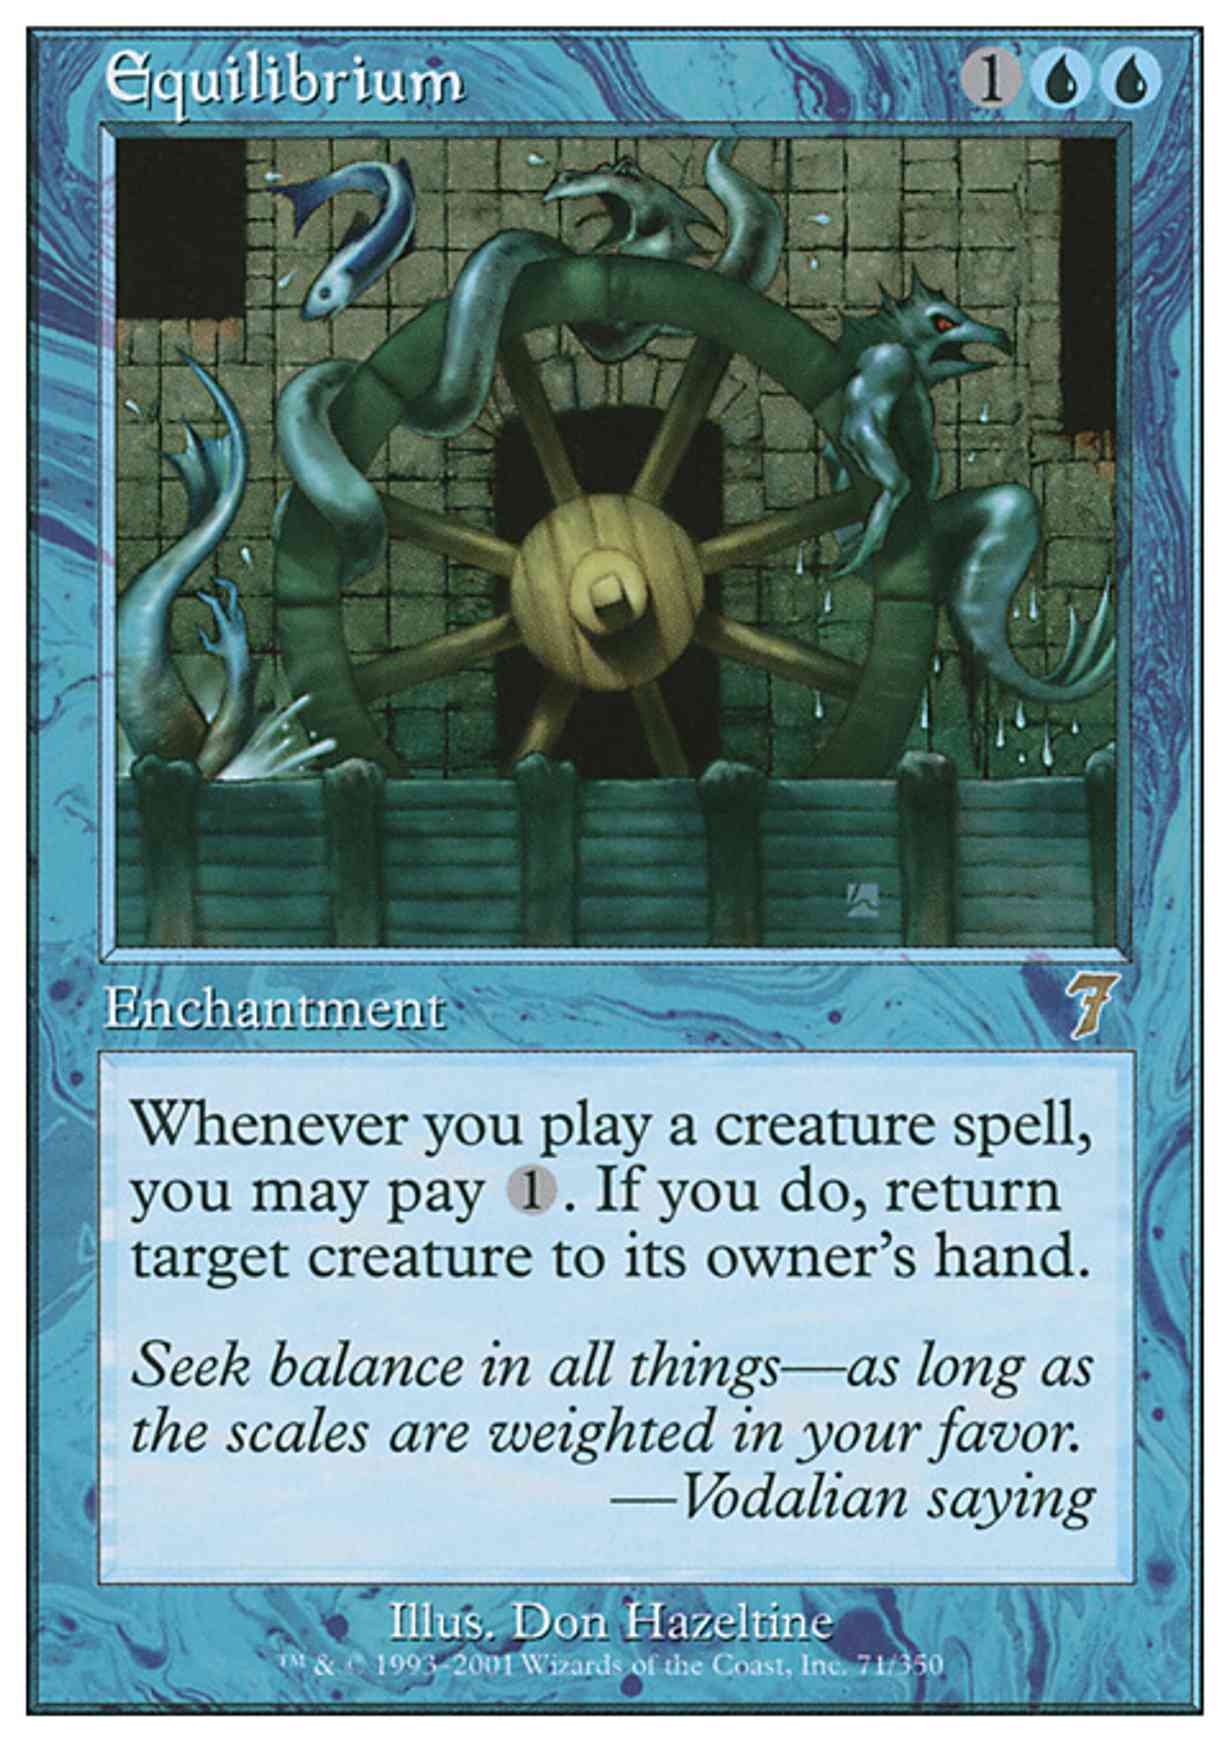 Equilibrium magic card front